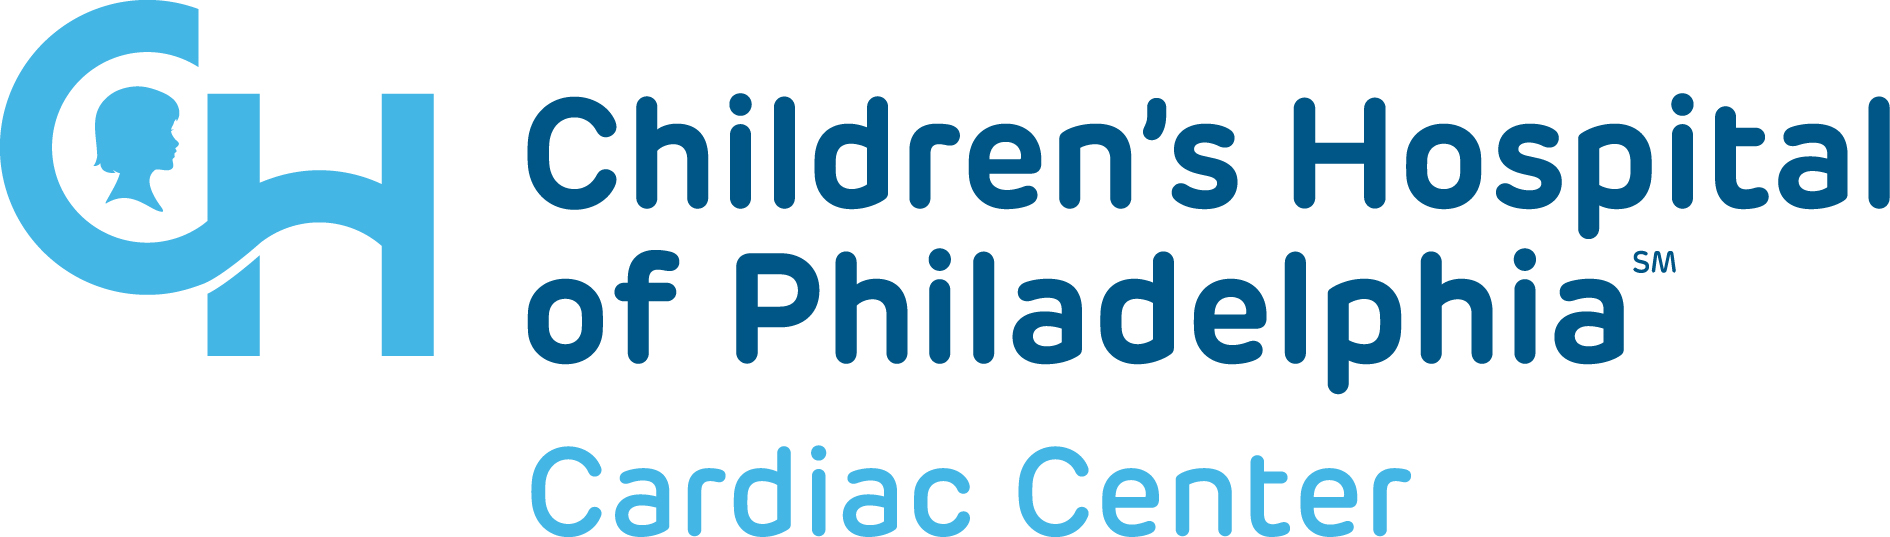  Children's Hospital of Philadelphia